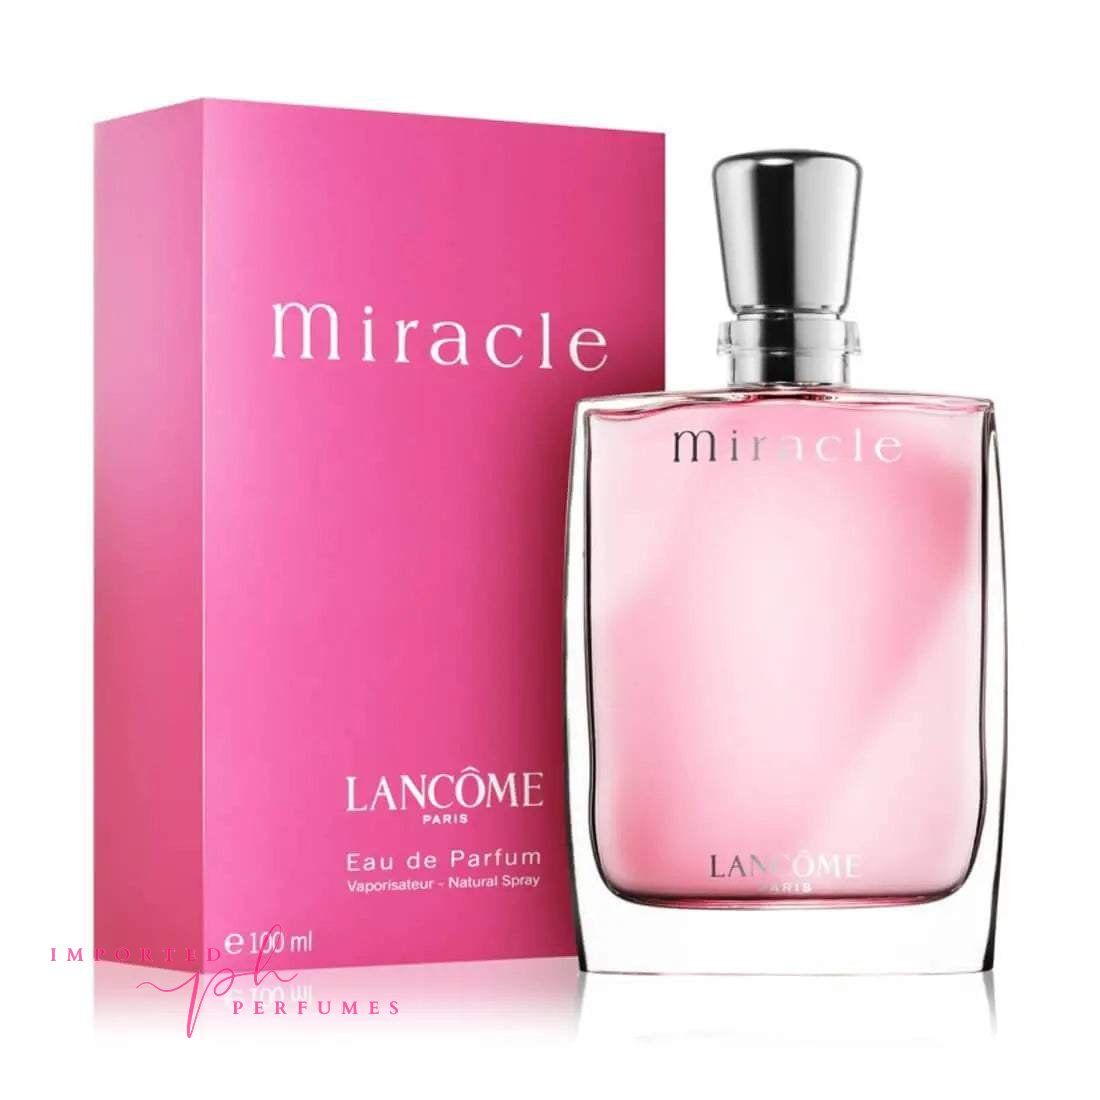 Miracle By Lancome Paris For Women Eau De Parfum 100ml-Imported Perfumes Co-Lancome,Lancome Paris,Miracle,Paris,Women